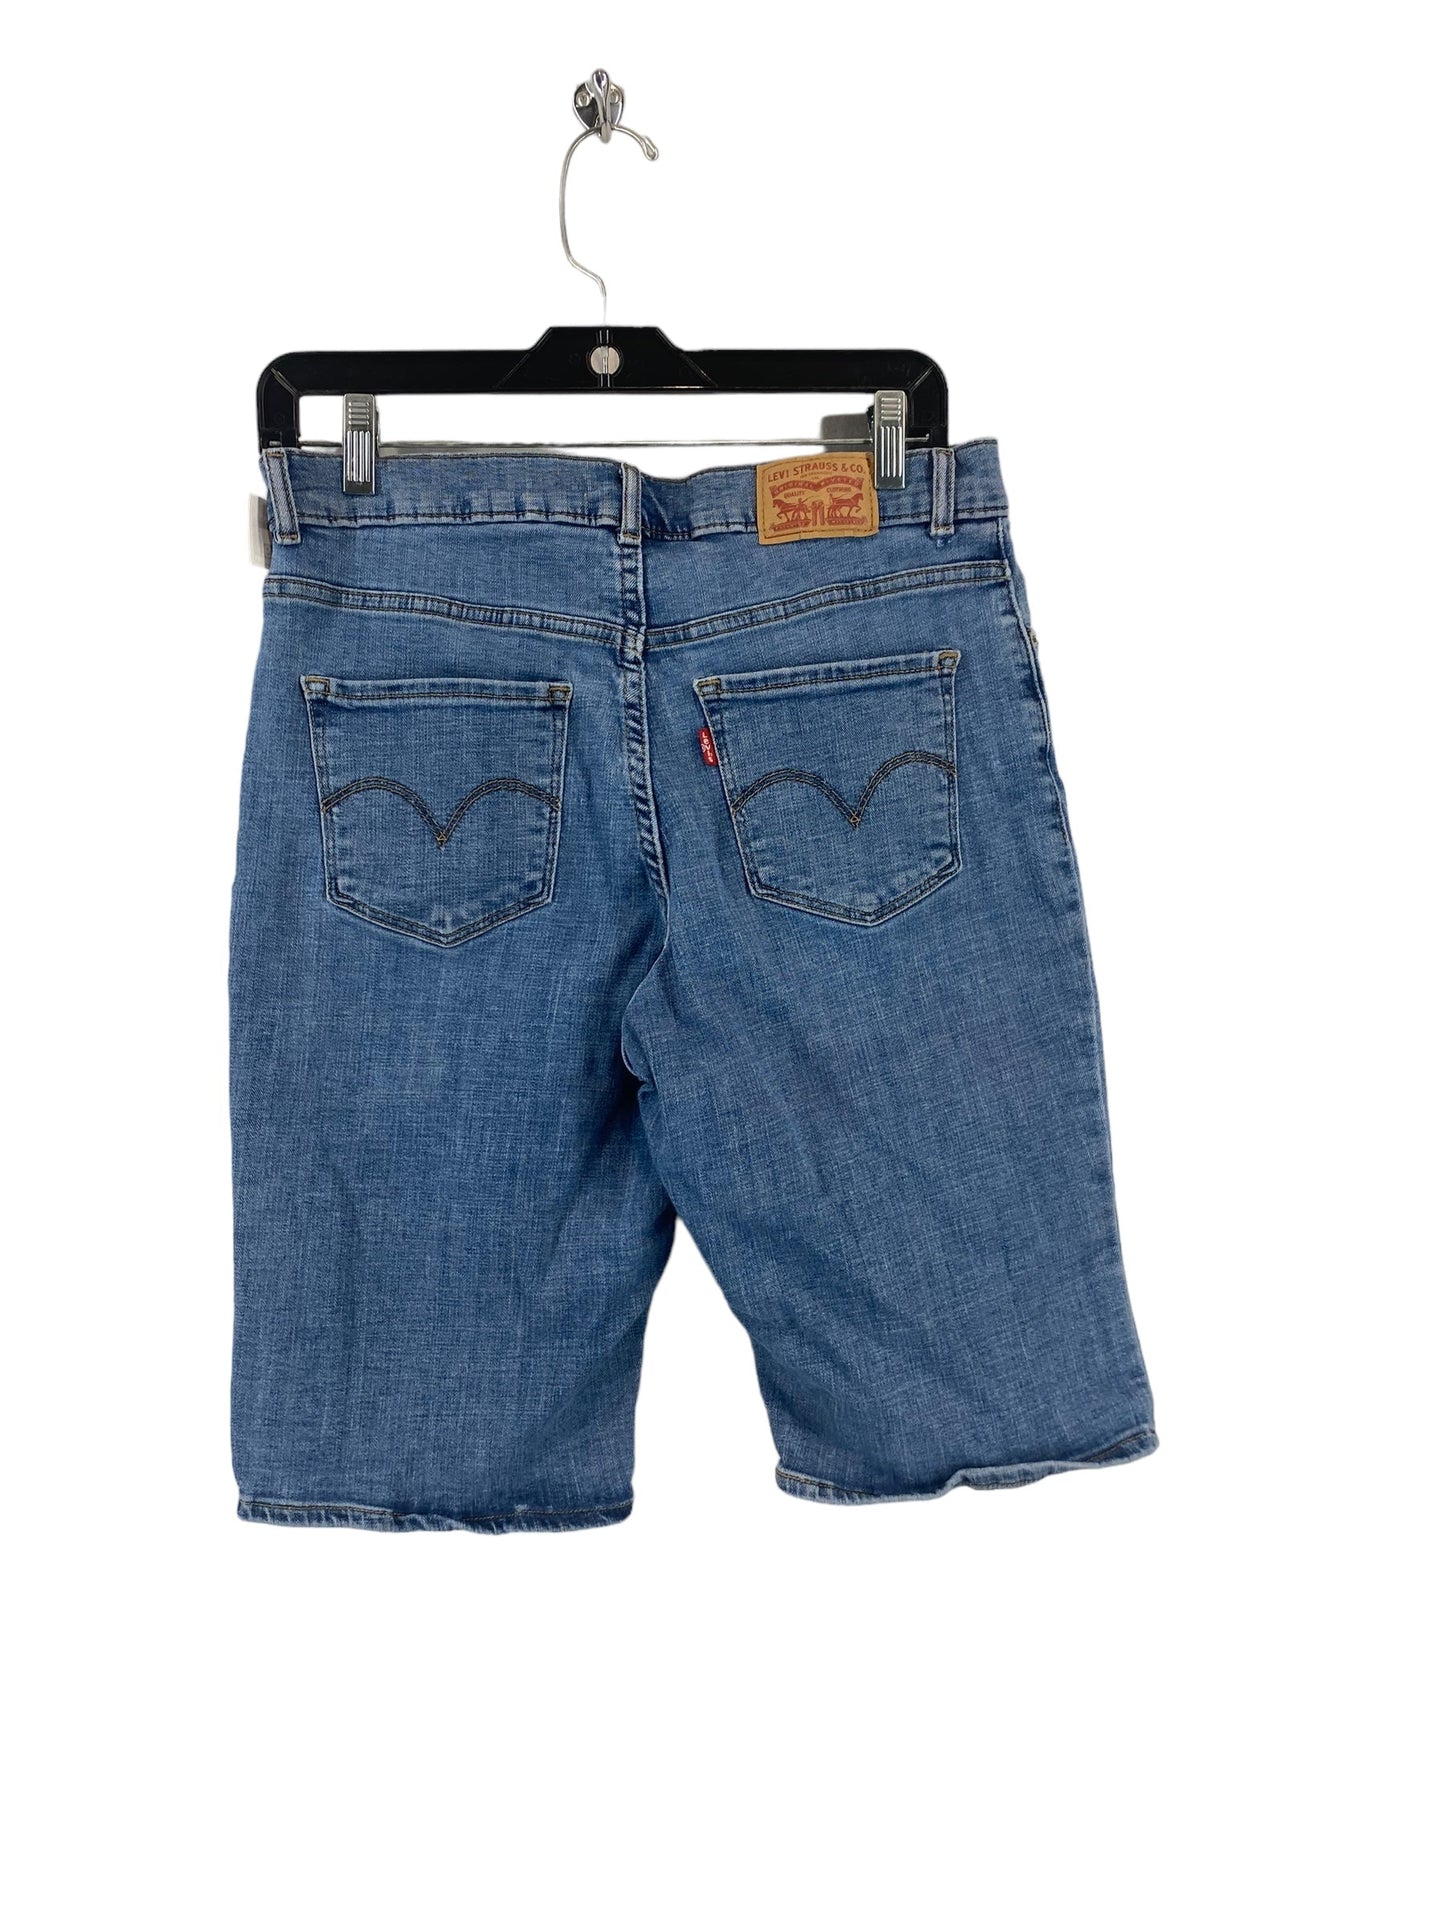 Blue Denim Shorts Levis, Size 28